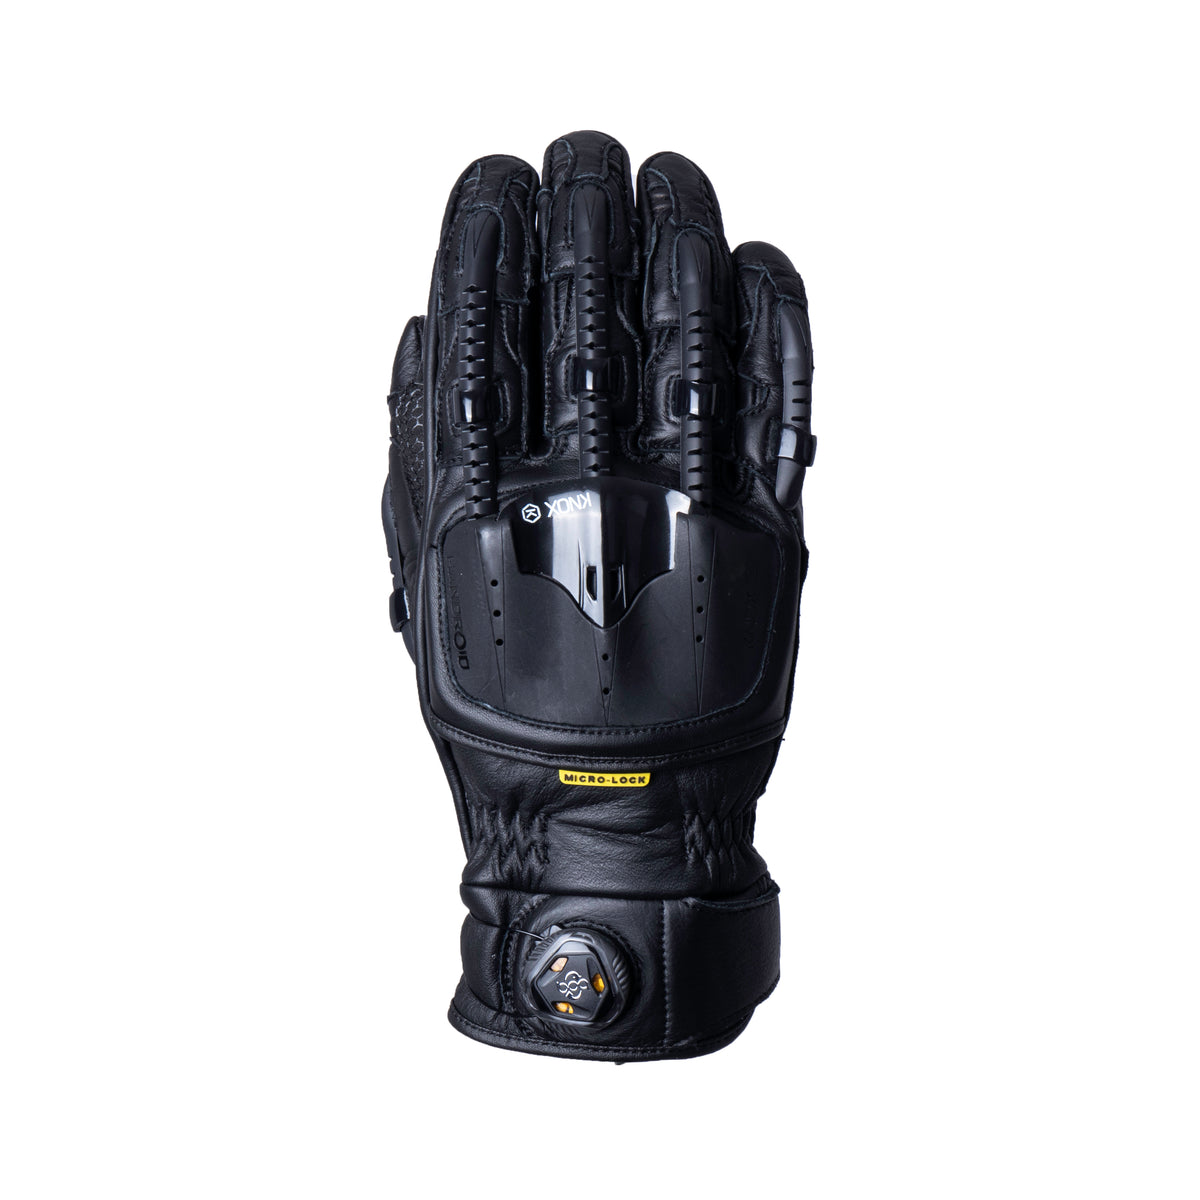 Knox Handroid Pod MK4 Gloves